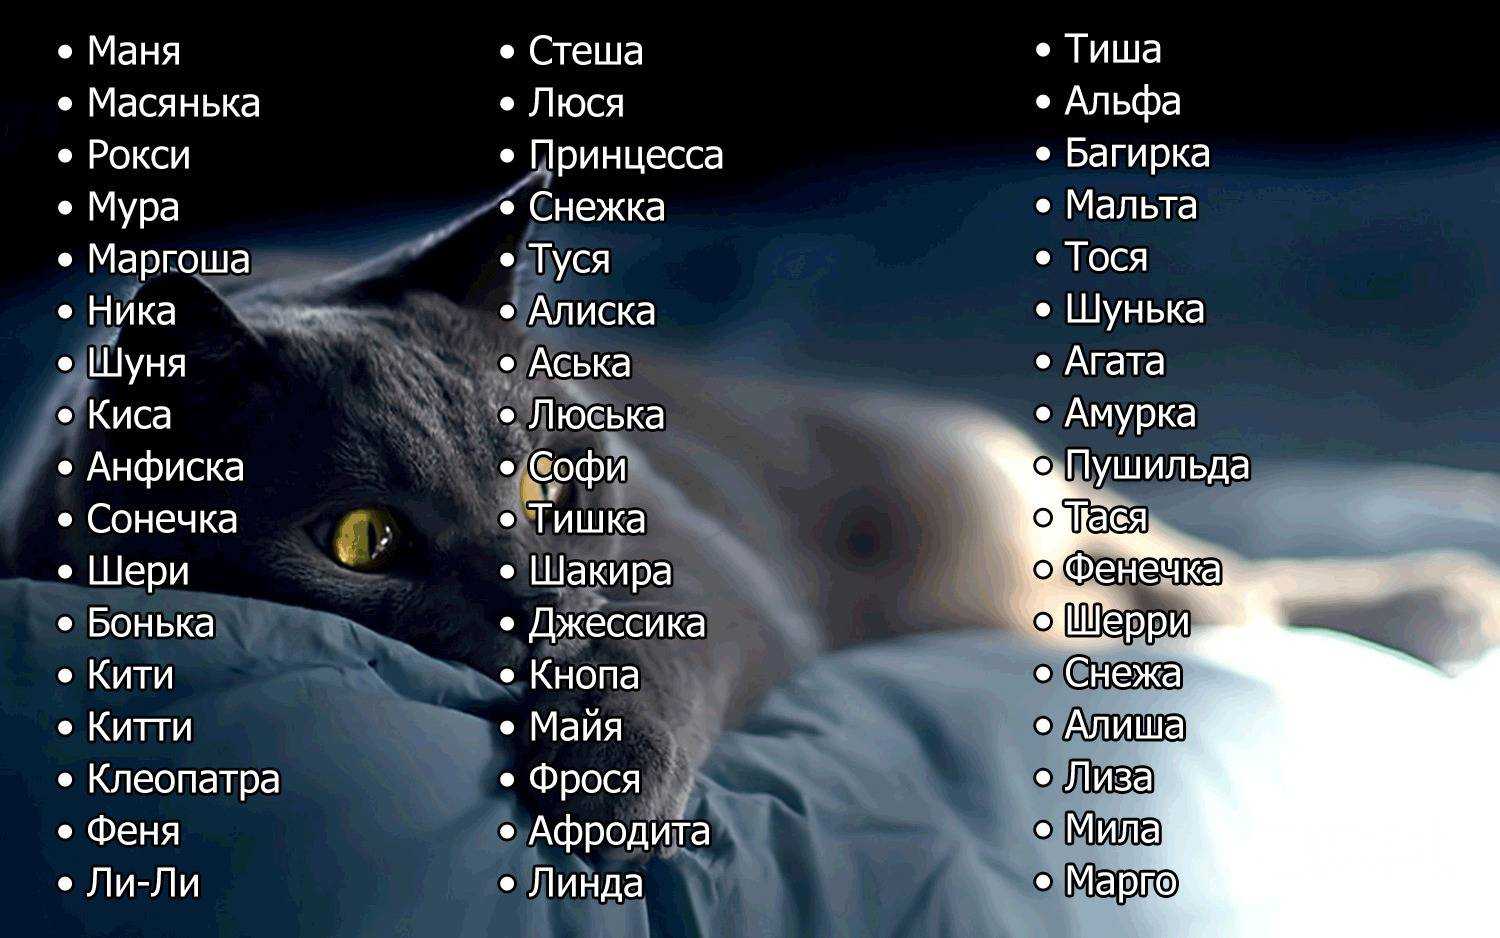 Список имен кошек на букву О с расшифровкой значений имен и страны происхождения